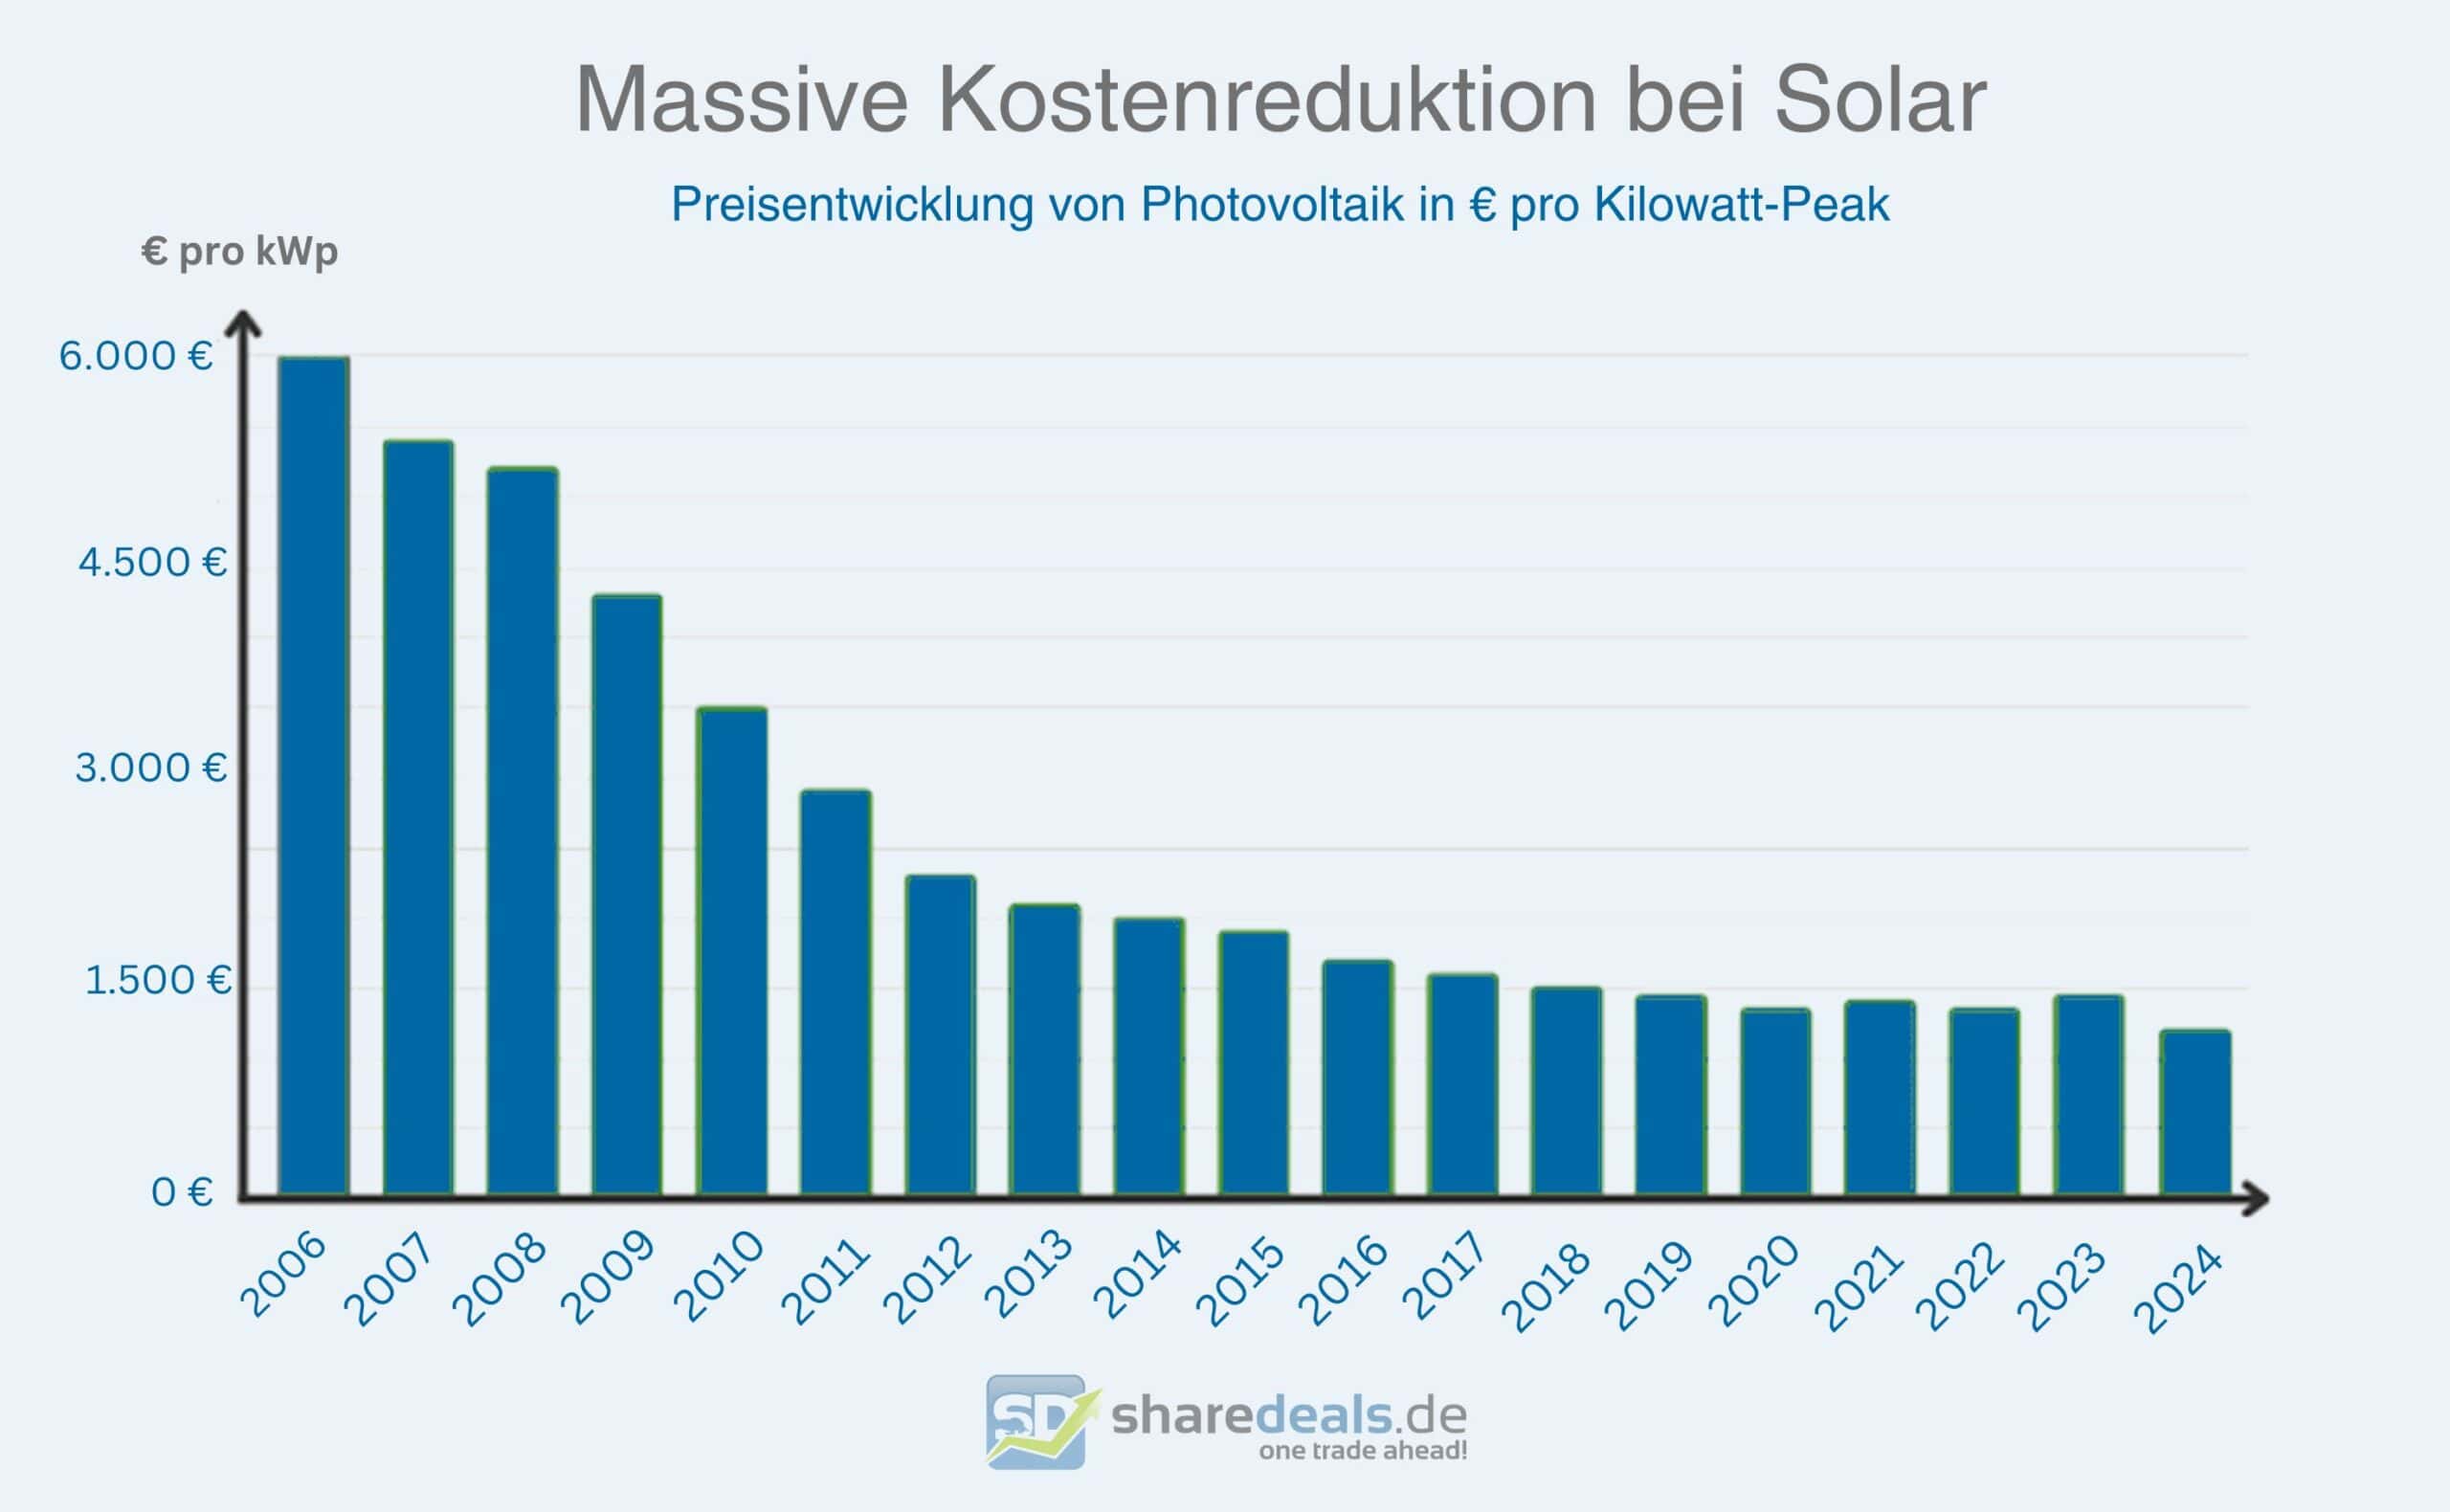 Preisentwicklung von Photovoltaik